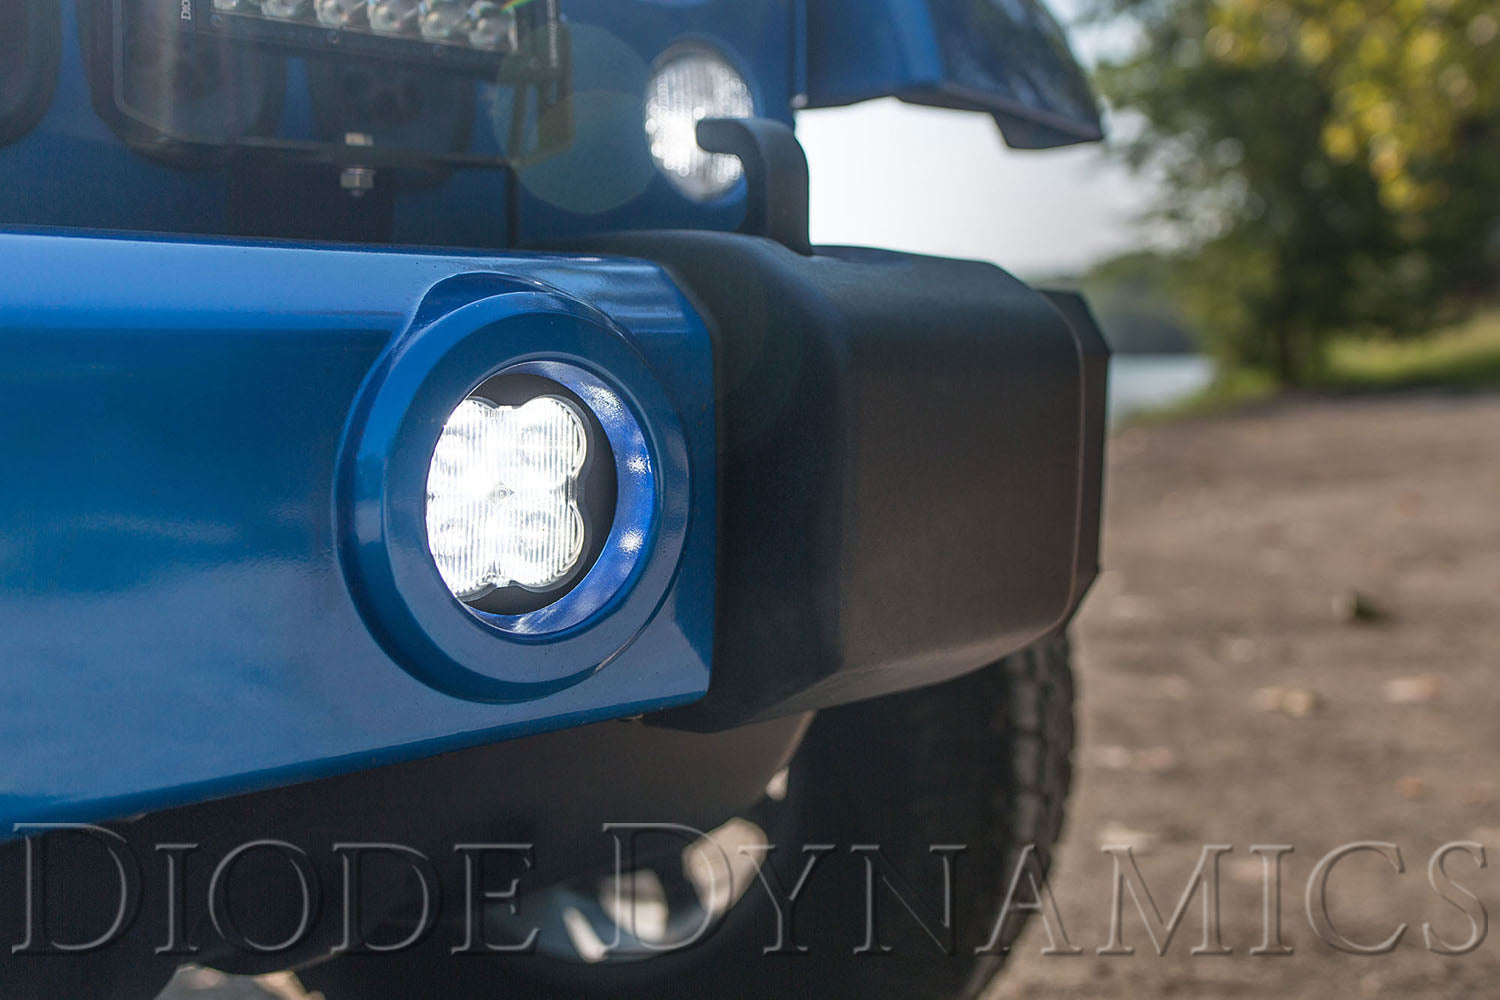 SS3 LED Fog Light Kit for 2007-2018 Jeep JK Wrangler White SAE/DOT Driving Pro Diode Dynamics